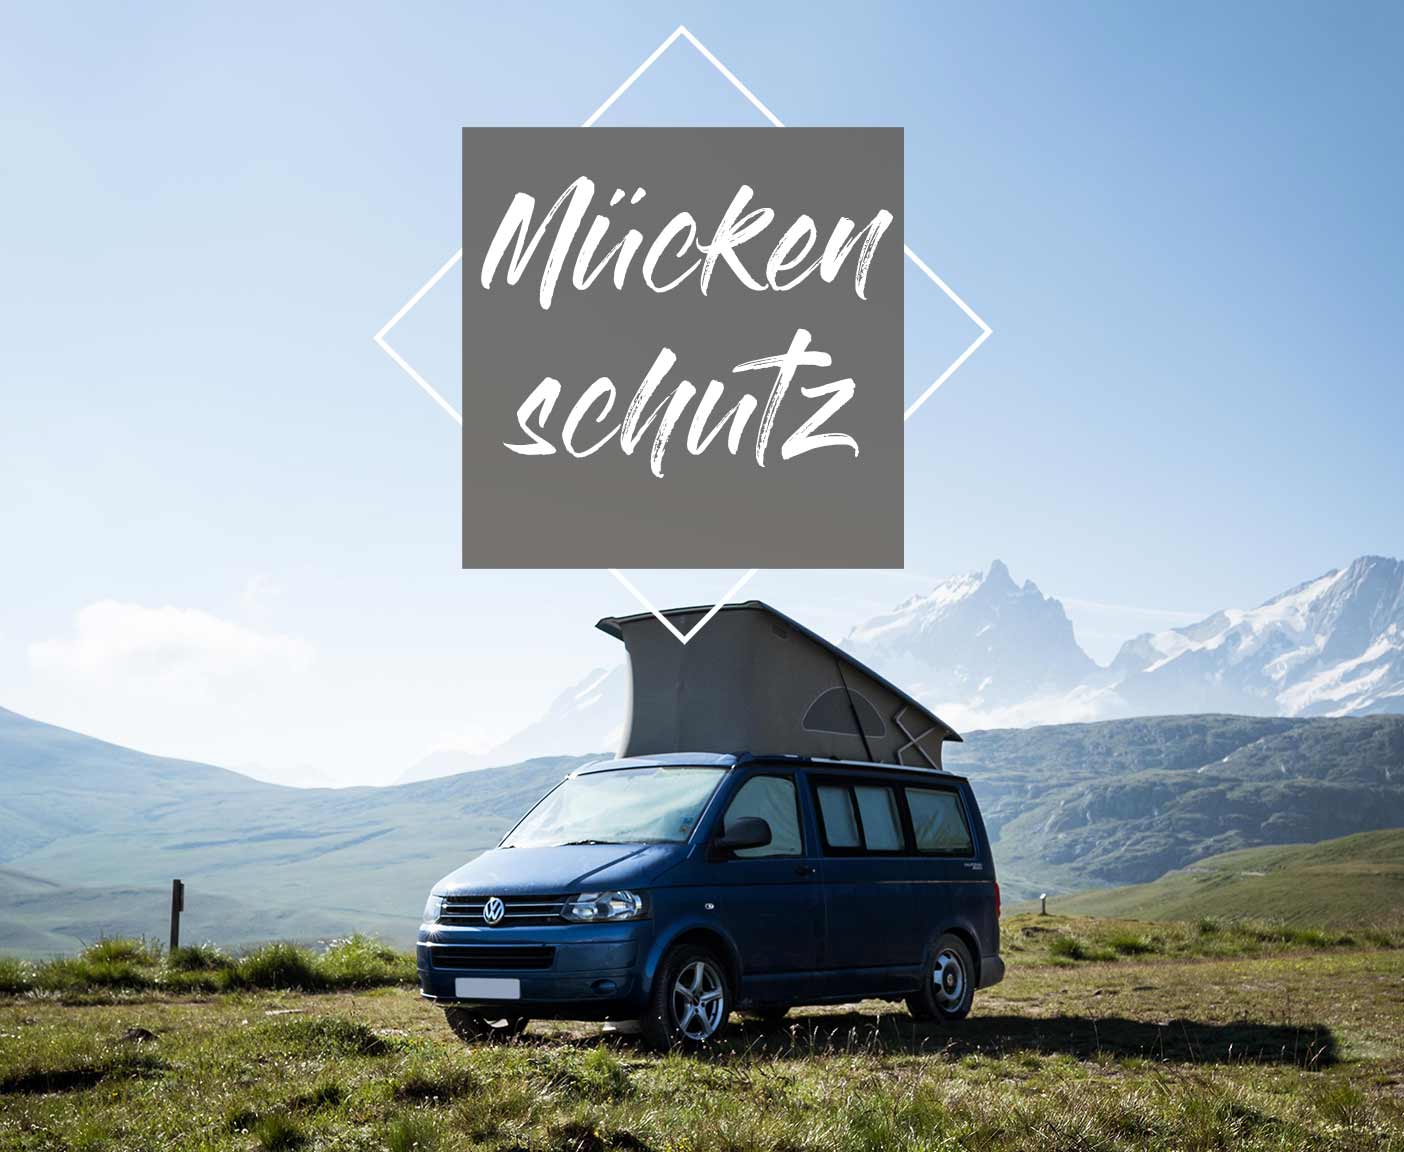 https://passport-diary.com/wp-content/uploads/2018/11/mueckenschutz-wohnmobil-insektenschutz-wohnwagen-trailer-ungeziefer-cover.jpg